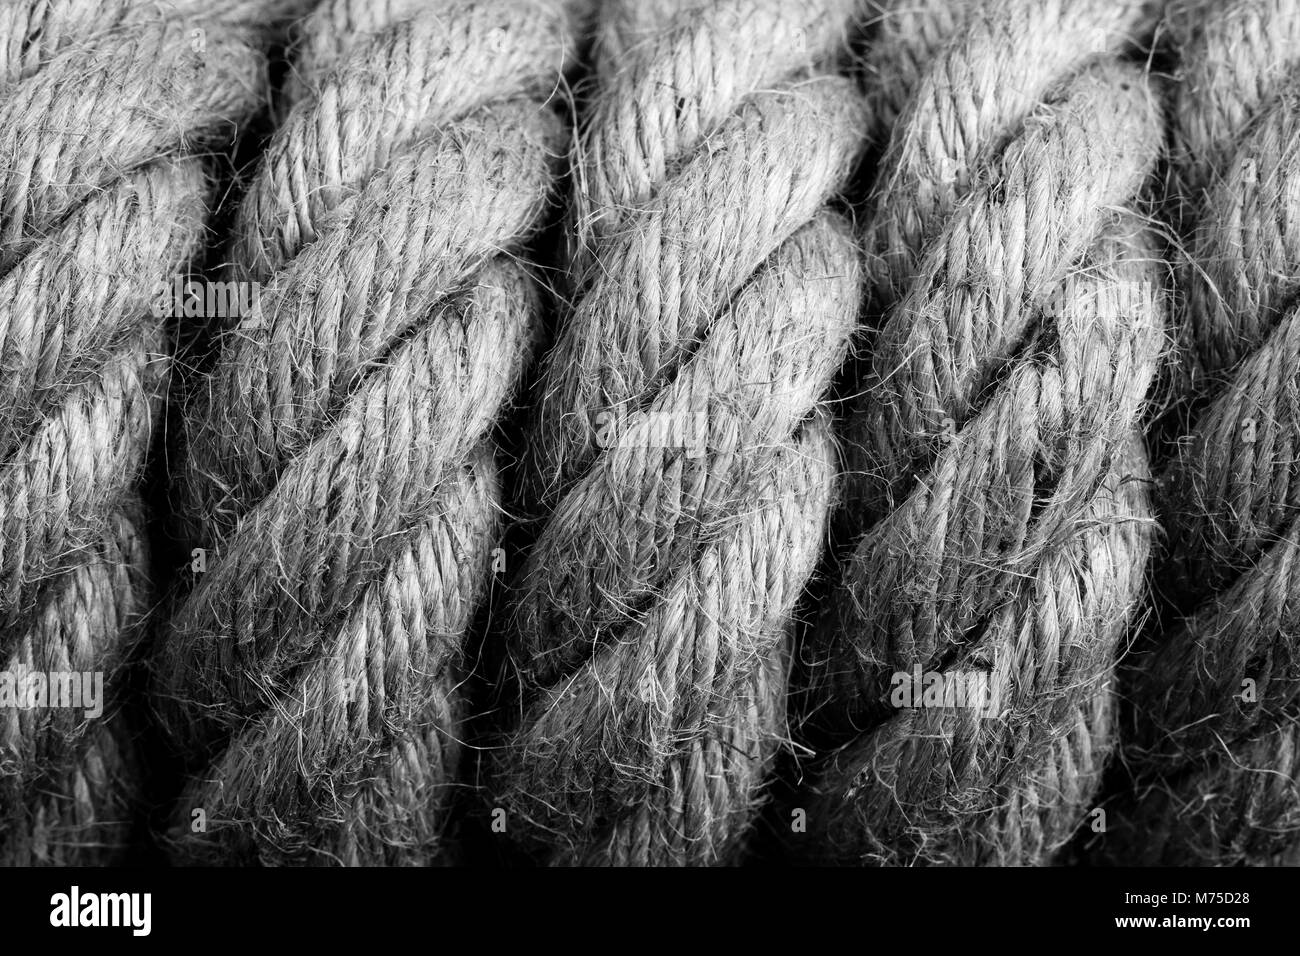 Gallows cappio nodo - immagine in bianco e nero Foto Stock